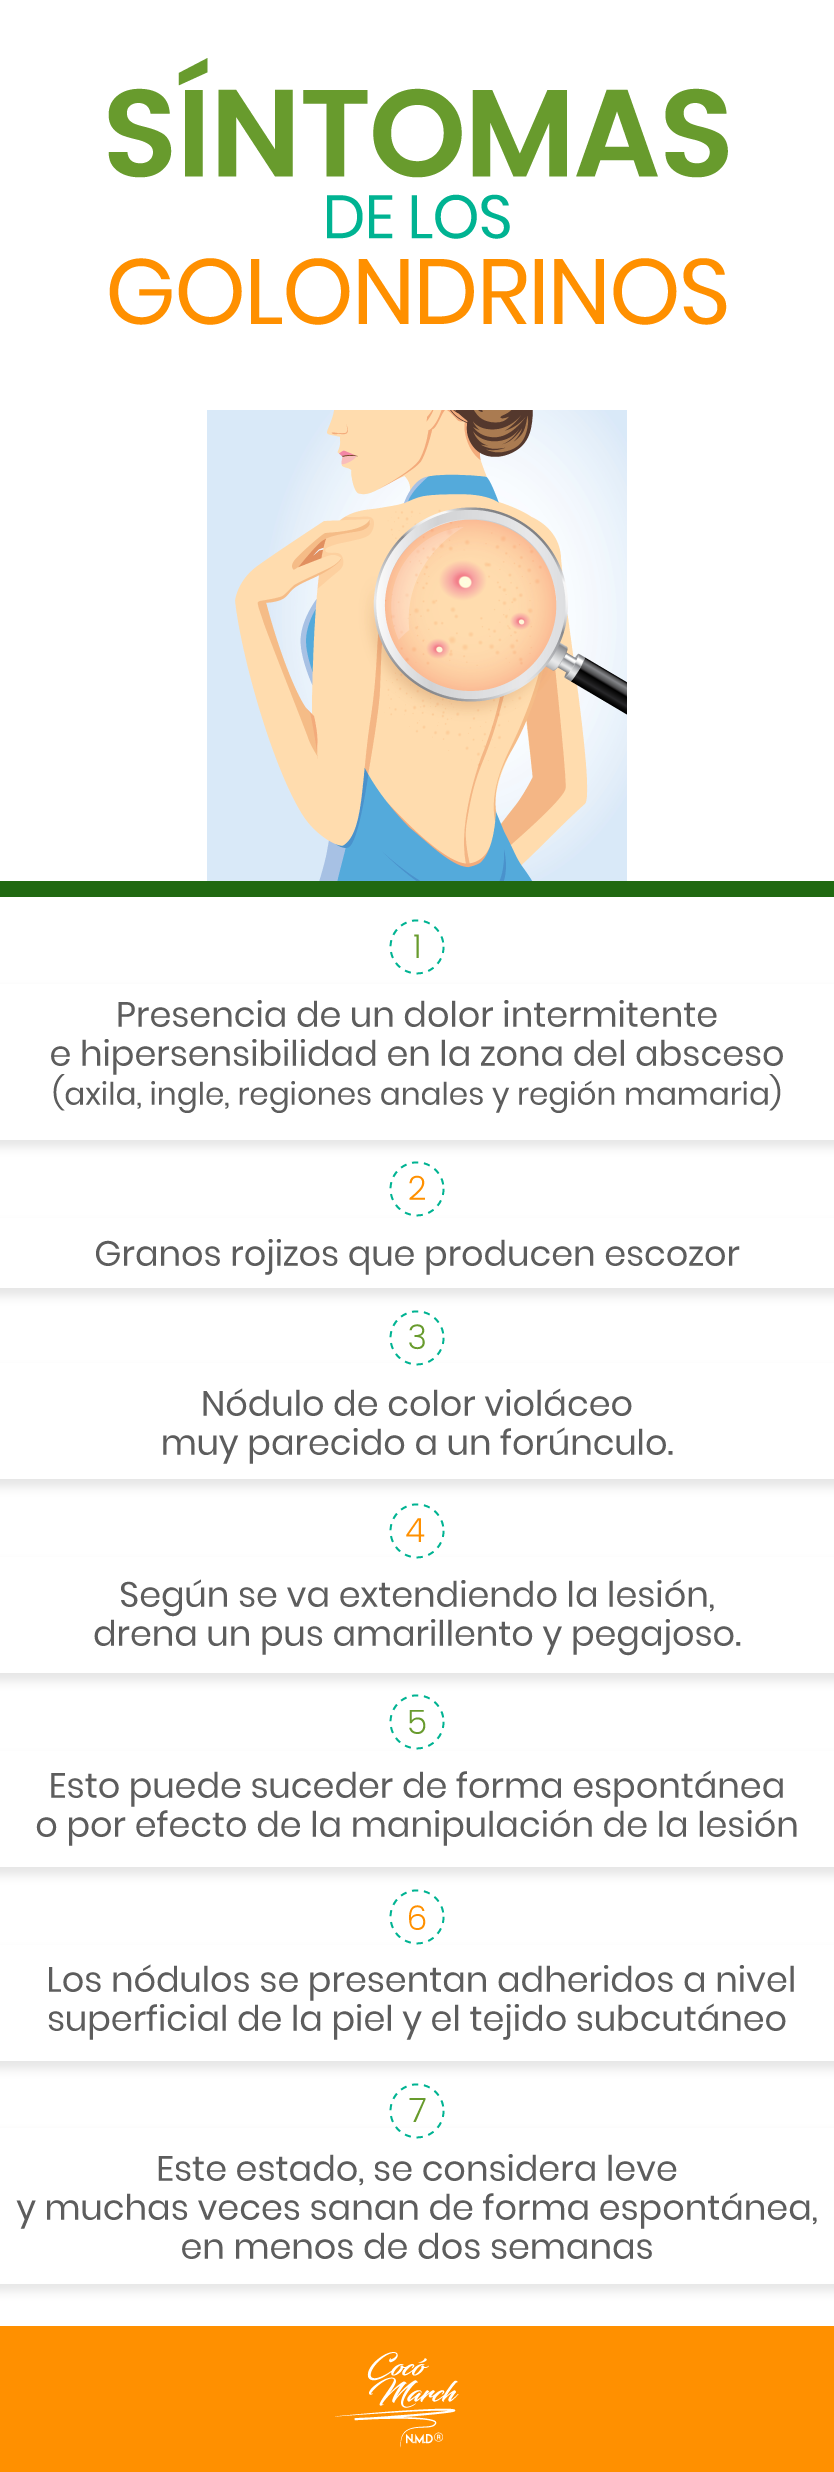 5 Remedios Caseros Para Curar Golondrinos En La Axila Coco March